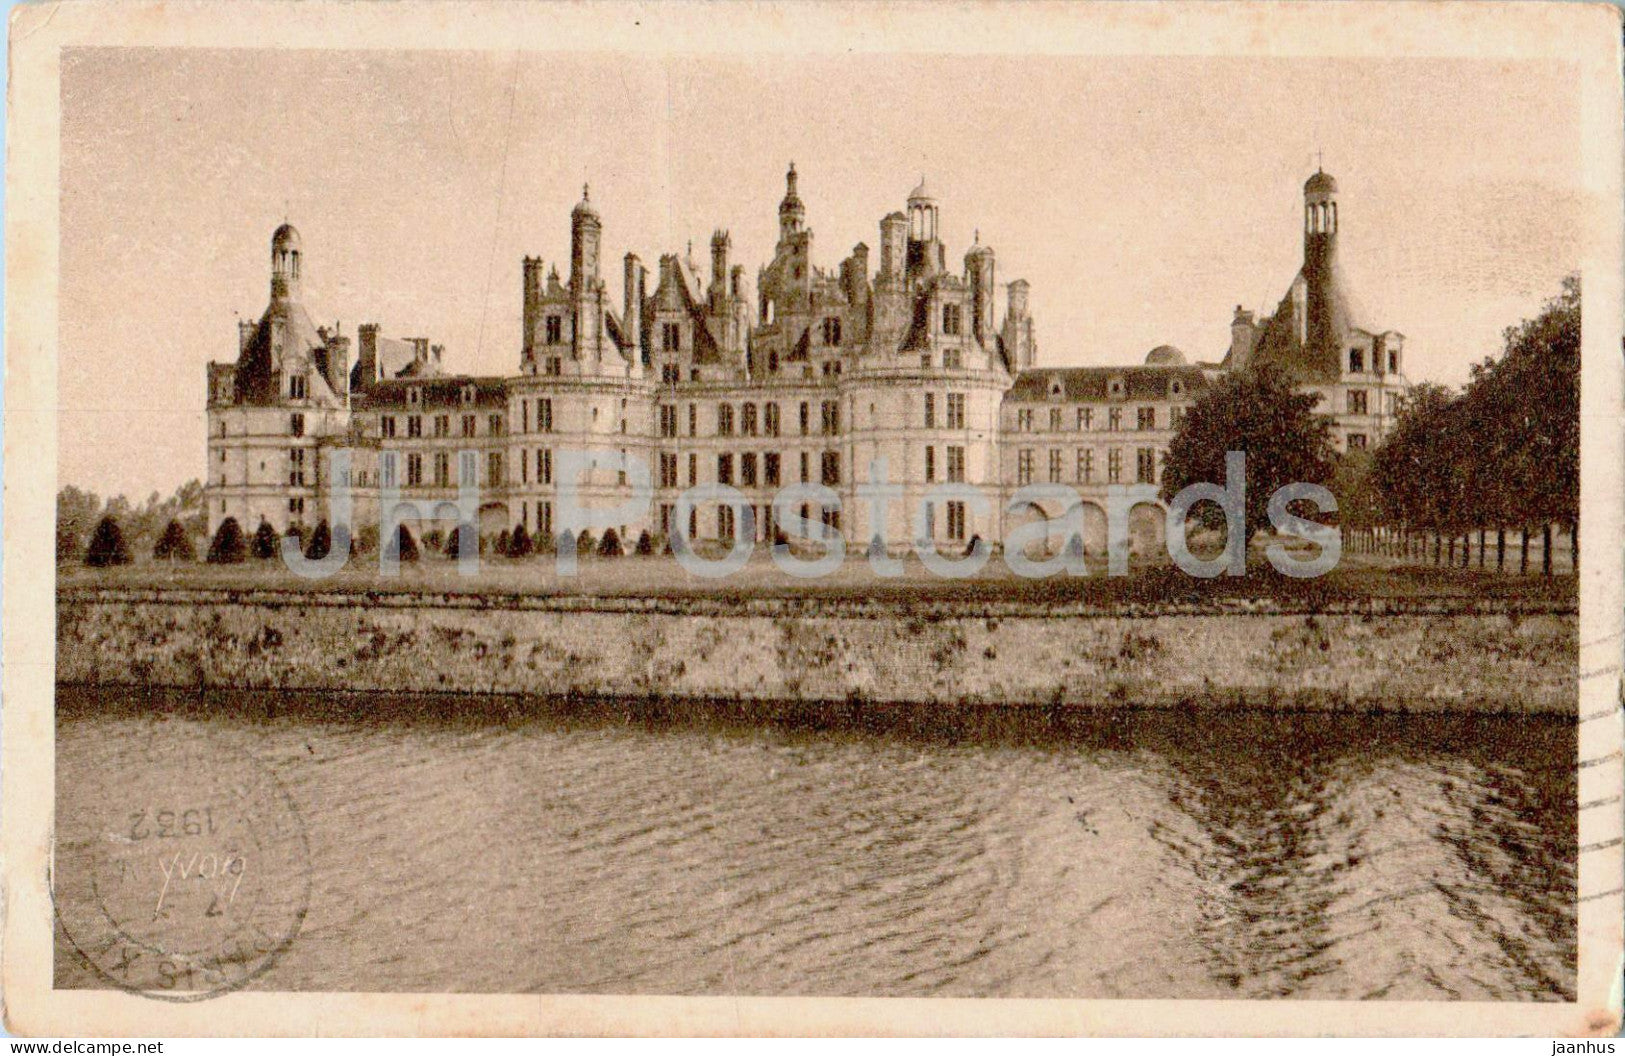 Chateau de Chambord - Facade Nord - Chateaux de La Loire - 13 - old postcard - 1932 - France - used - JH Postcards